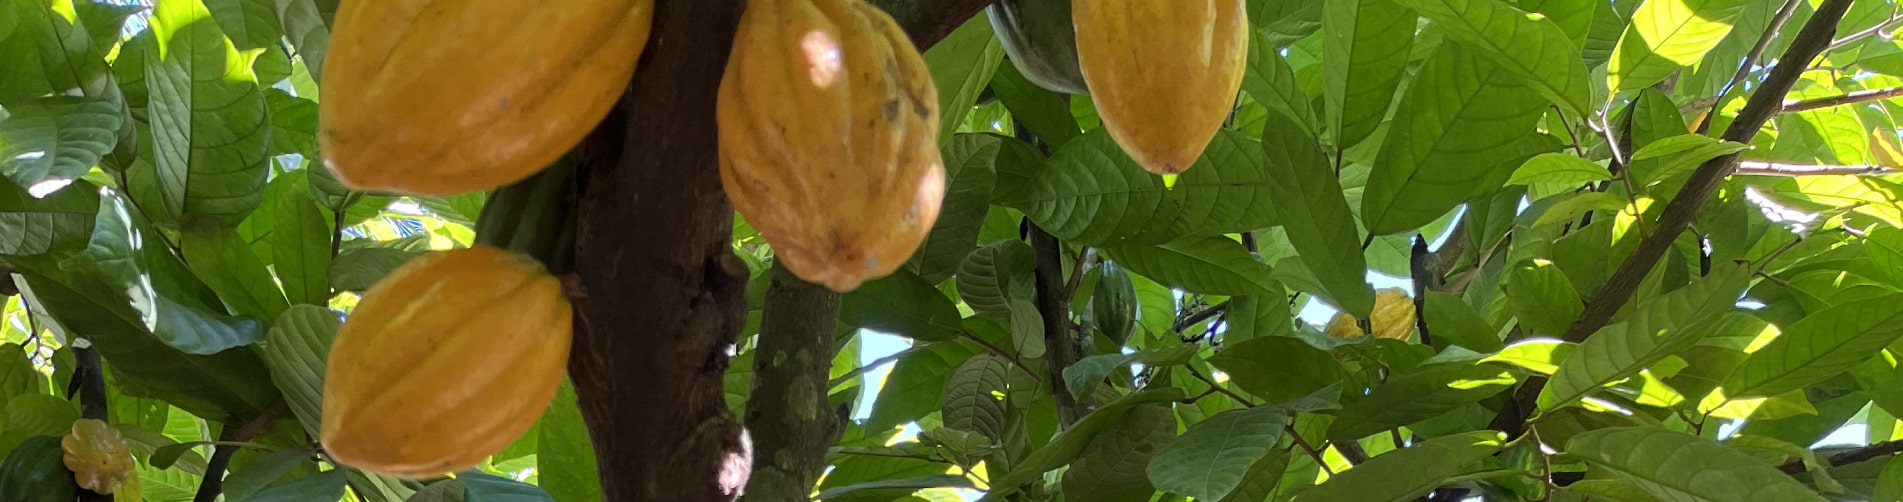 Promoviendo el cultivo de cacao